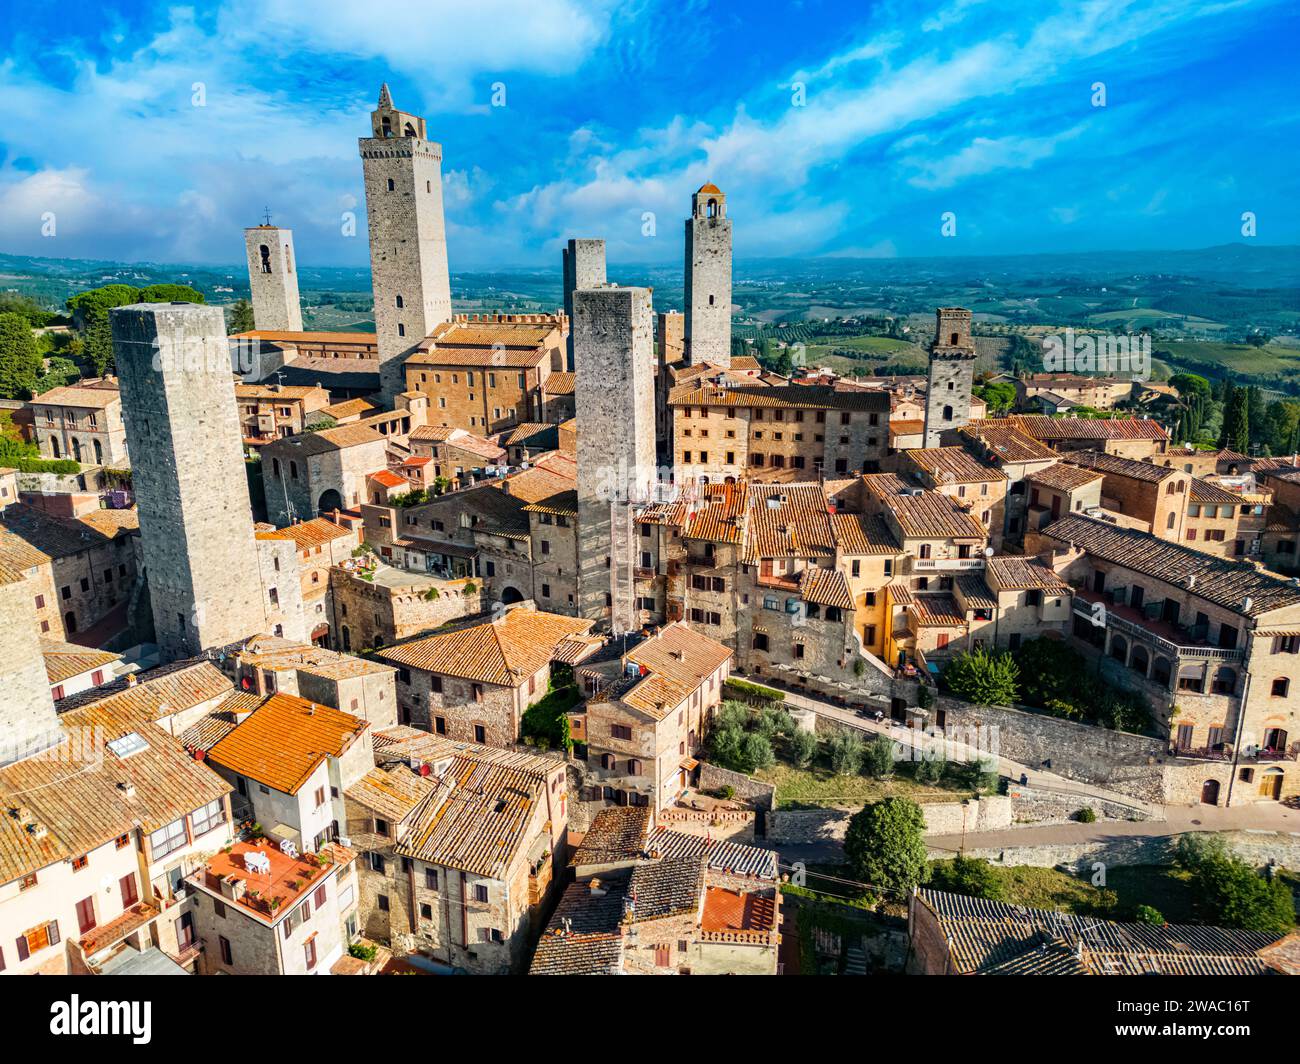 Vista aerea di San Gimignano, una cittadina collinare medievale fortificata nella provincia di Siena, Toscana, Italia Foto Stock